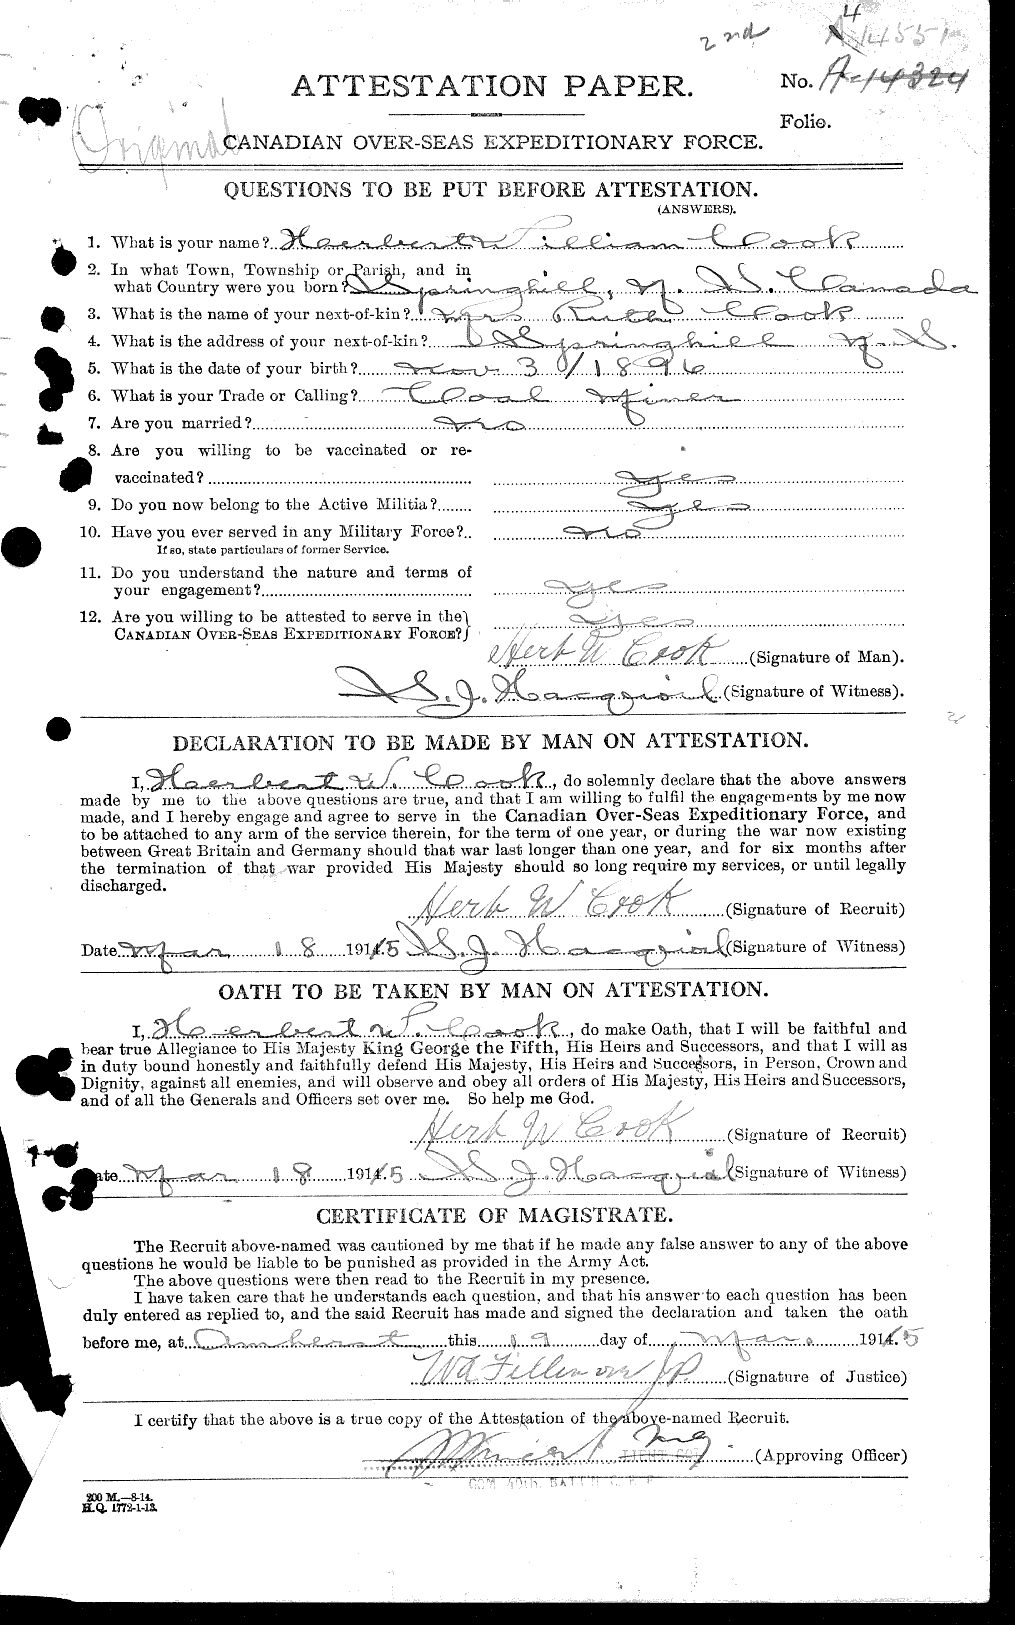 Dossiers du Personnel de la Première Guerre mondiale - CEC 041487a